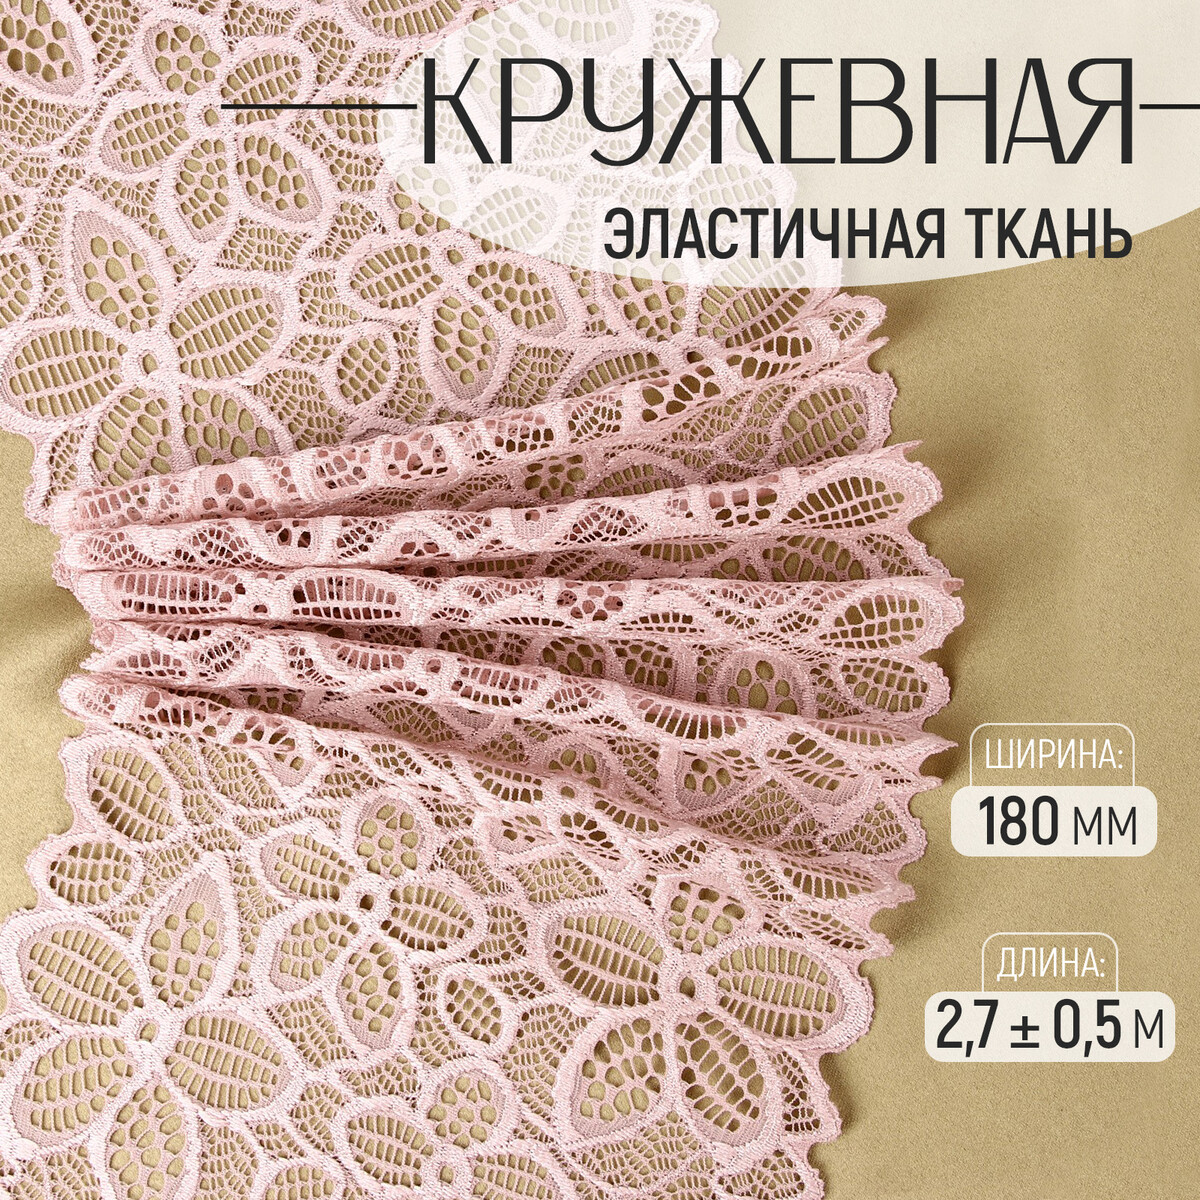 Кружевная эластичная ткань, 180 мм × 2,7 ± 0,5 м, цвет пудровый